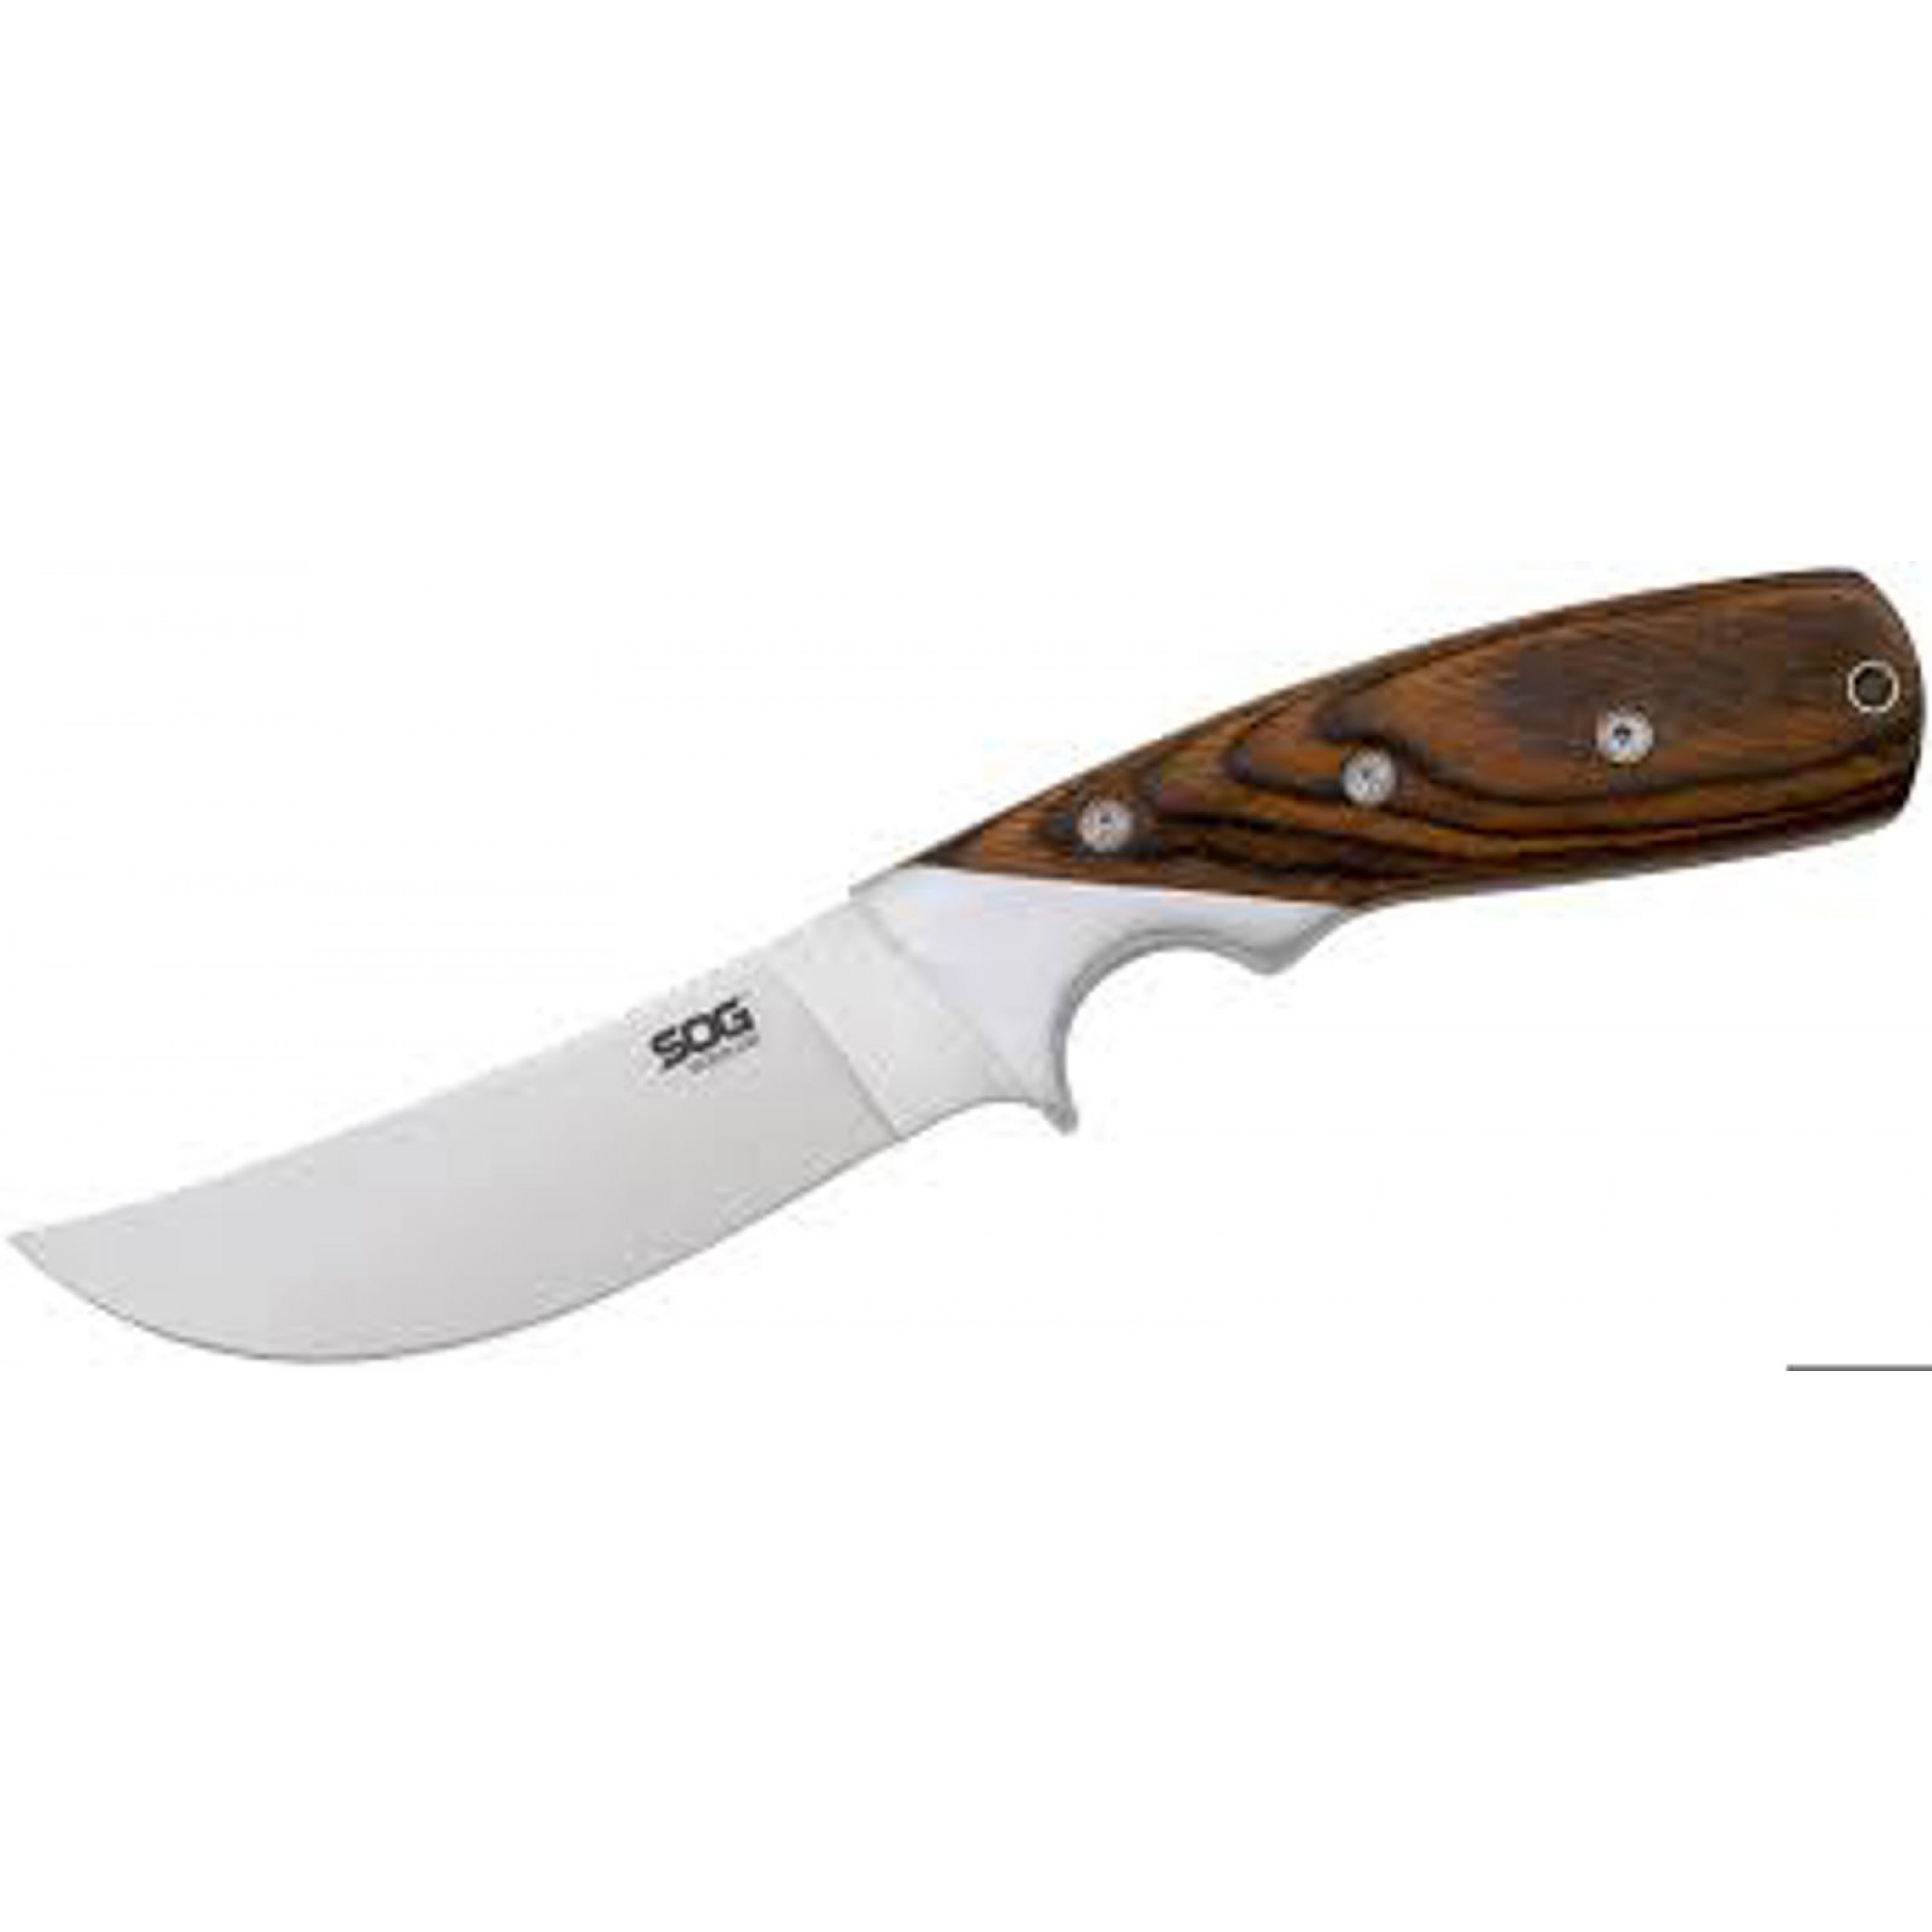 SOG WOODLINE LARGE FIXED BLADE KNIFE, HARDWOOD HANDLE WITH SHEATH